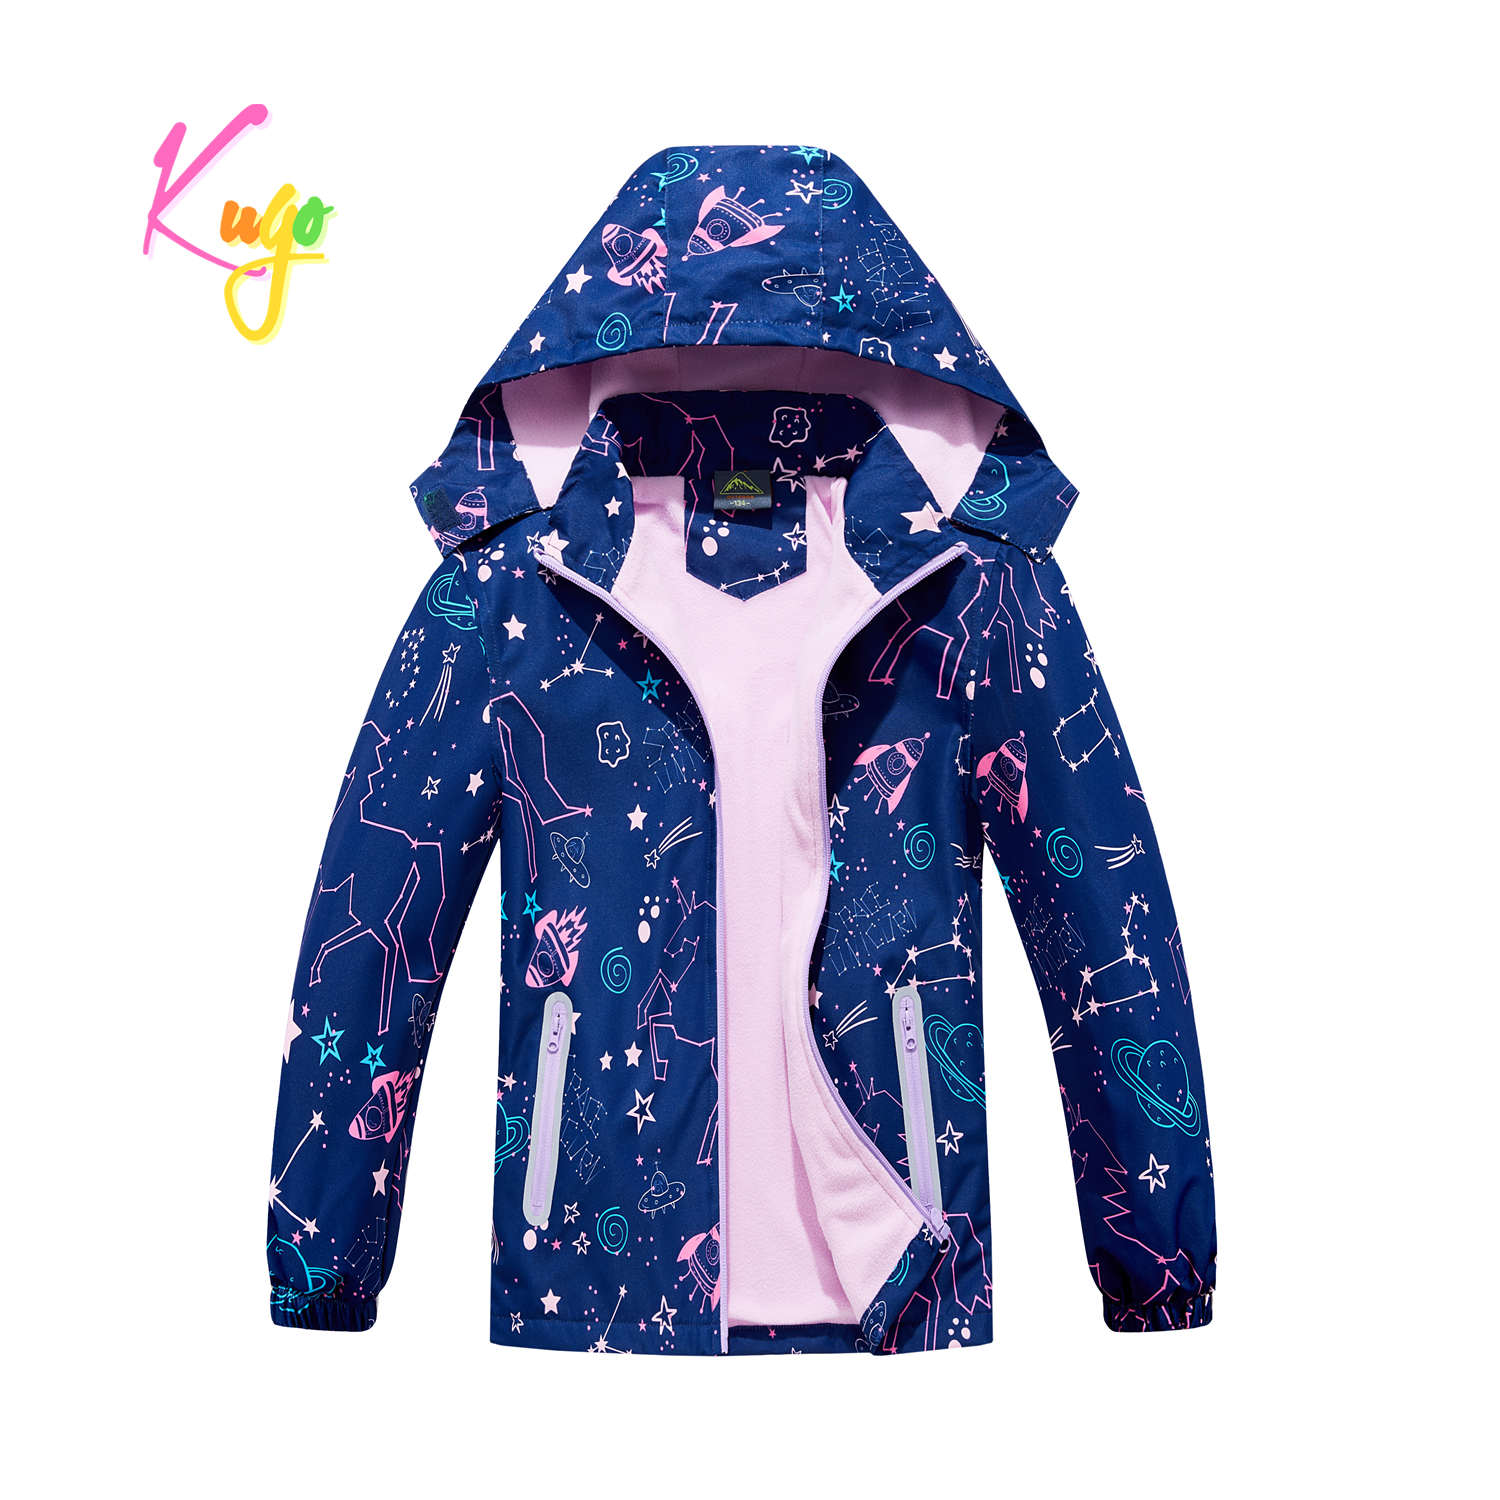 Dívčí podzimní bunda, zateplená - KUGO B2862, tmavě modrá Barva: Modrá tmavě, Velikost: 146